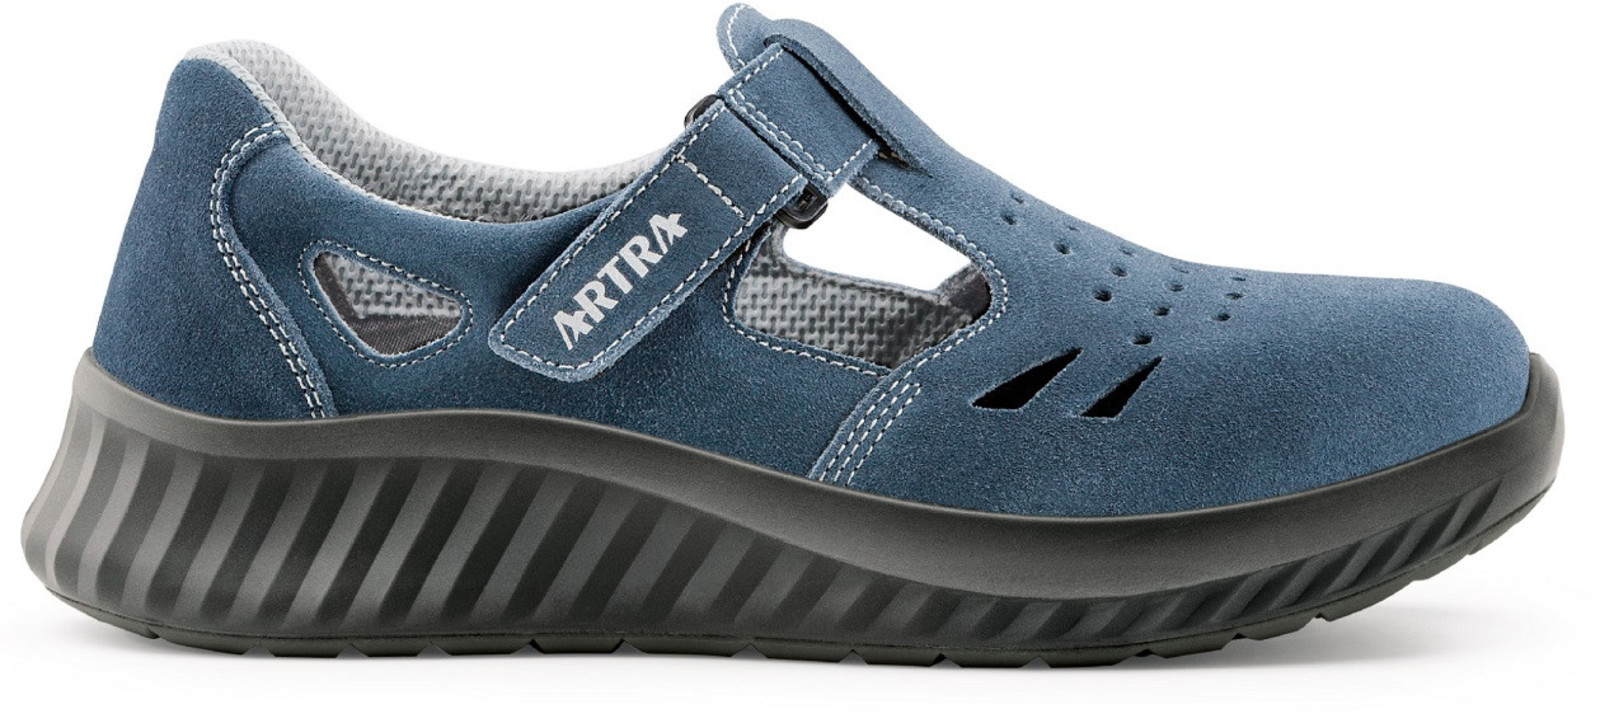 Bezpečnostné sandále Artra Armen 9007 9360 S1 - veľkosť: 43, farba: modrá